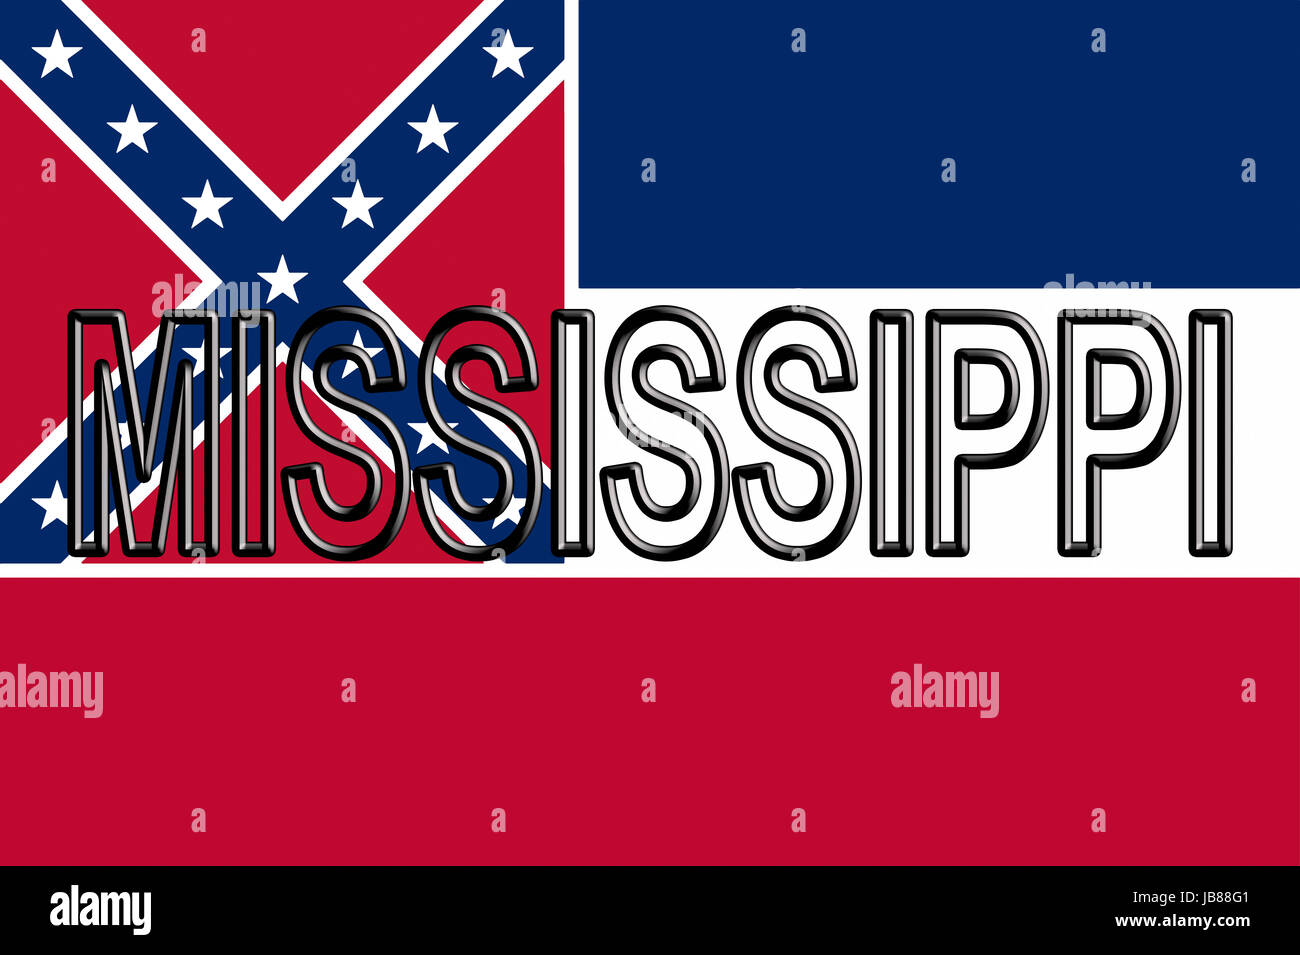 Abbildung der Flagge des Staates Mississippi in den USA mit dem Staat auf die Fahne geschrieben. Stockfoto